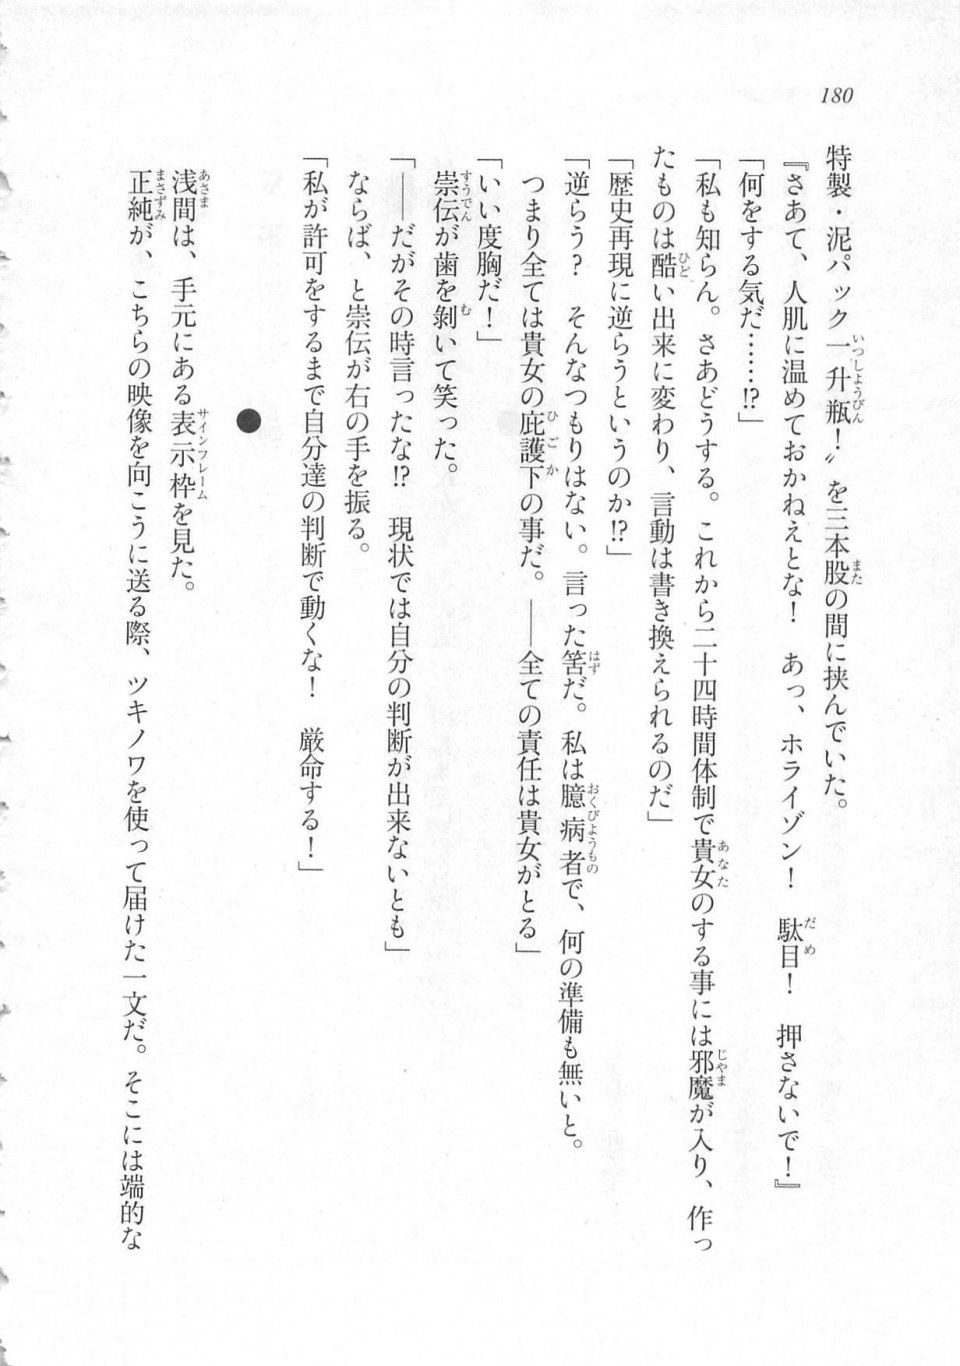 Kyoukai Senjou no Horizon LN Sidestory Vol 3 - Photo #184